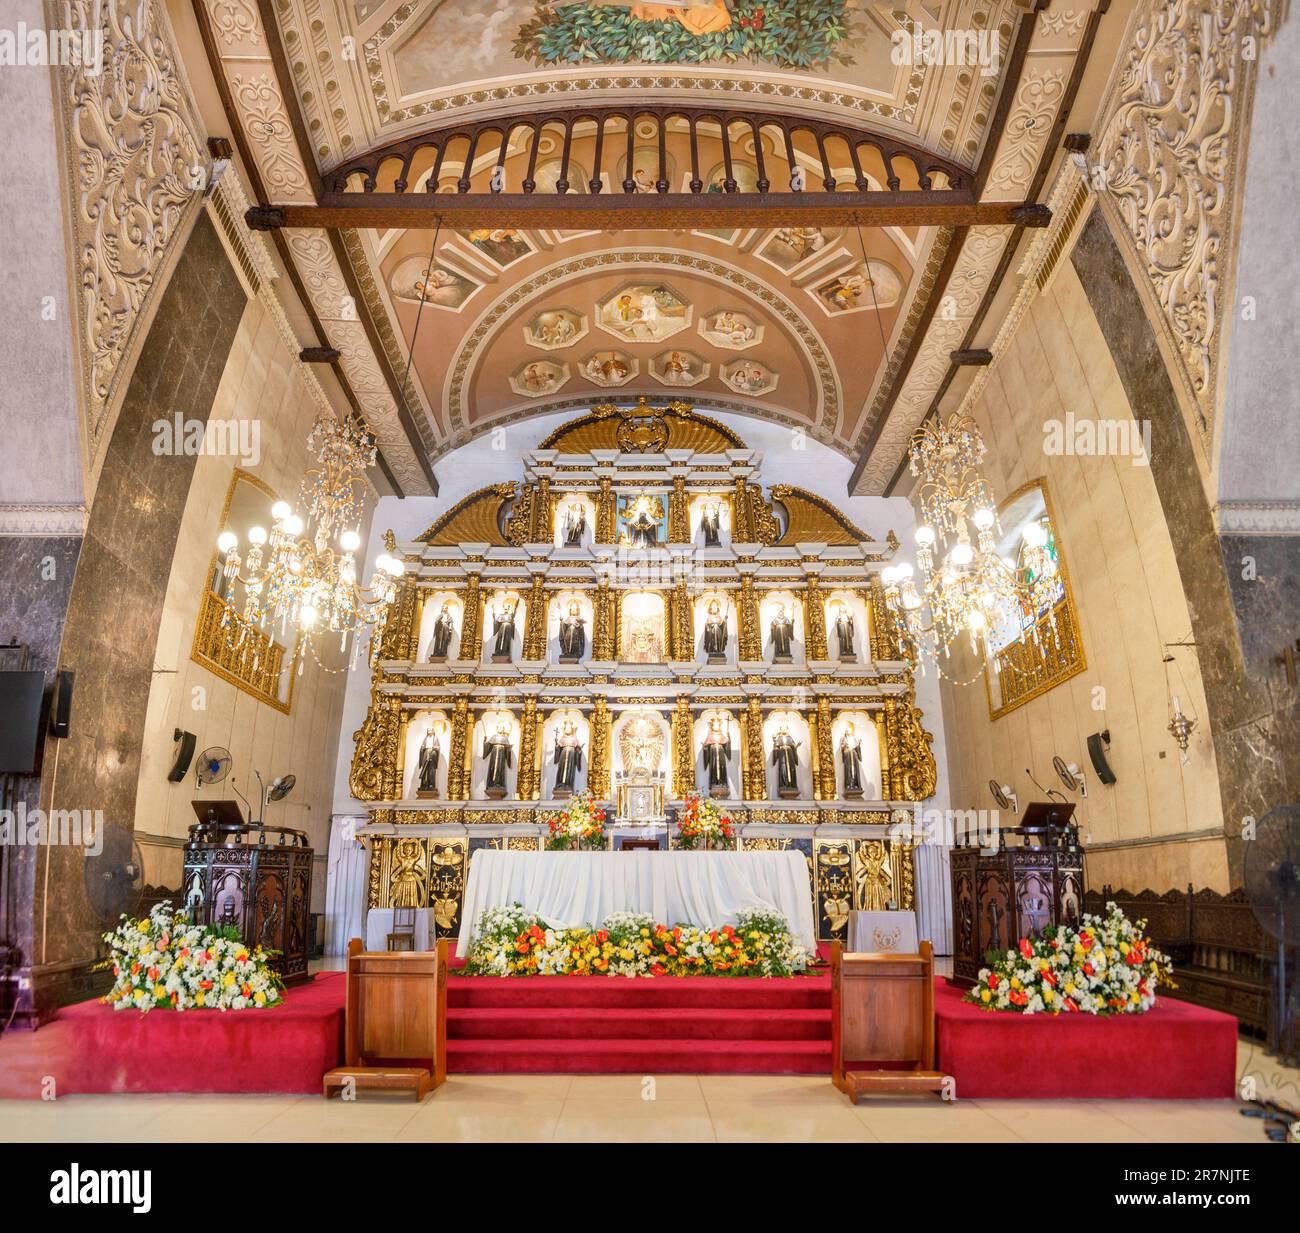 Cebu ville,Cebu,Philippines-17 janvier 2023:l'autel d'or, entouré de fleurs fraîches et tapis rouge, est honoré avec des images emblématiques de saints, anges, Banque D'Images